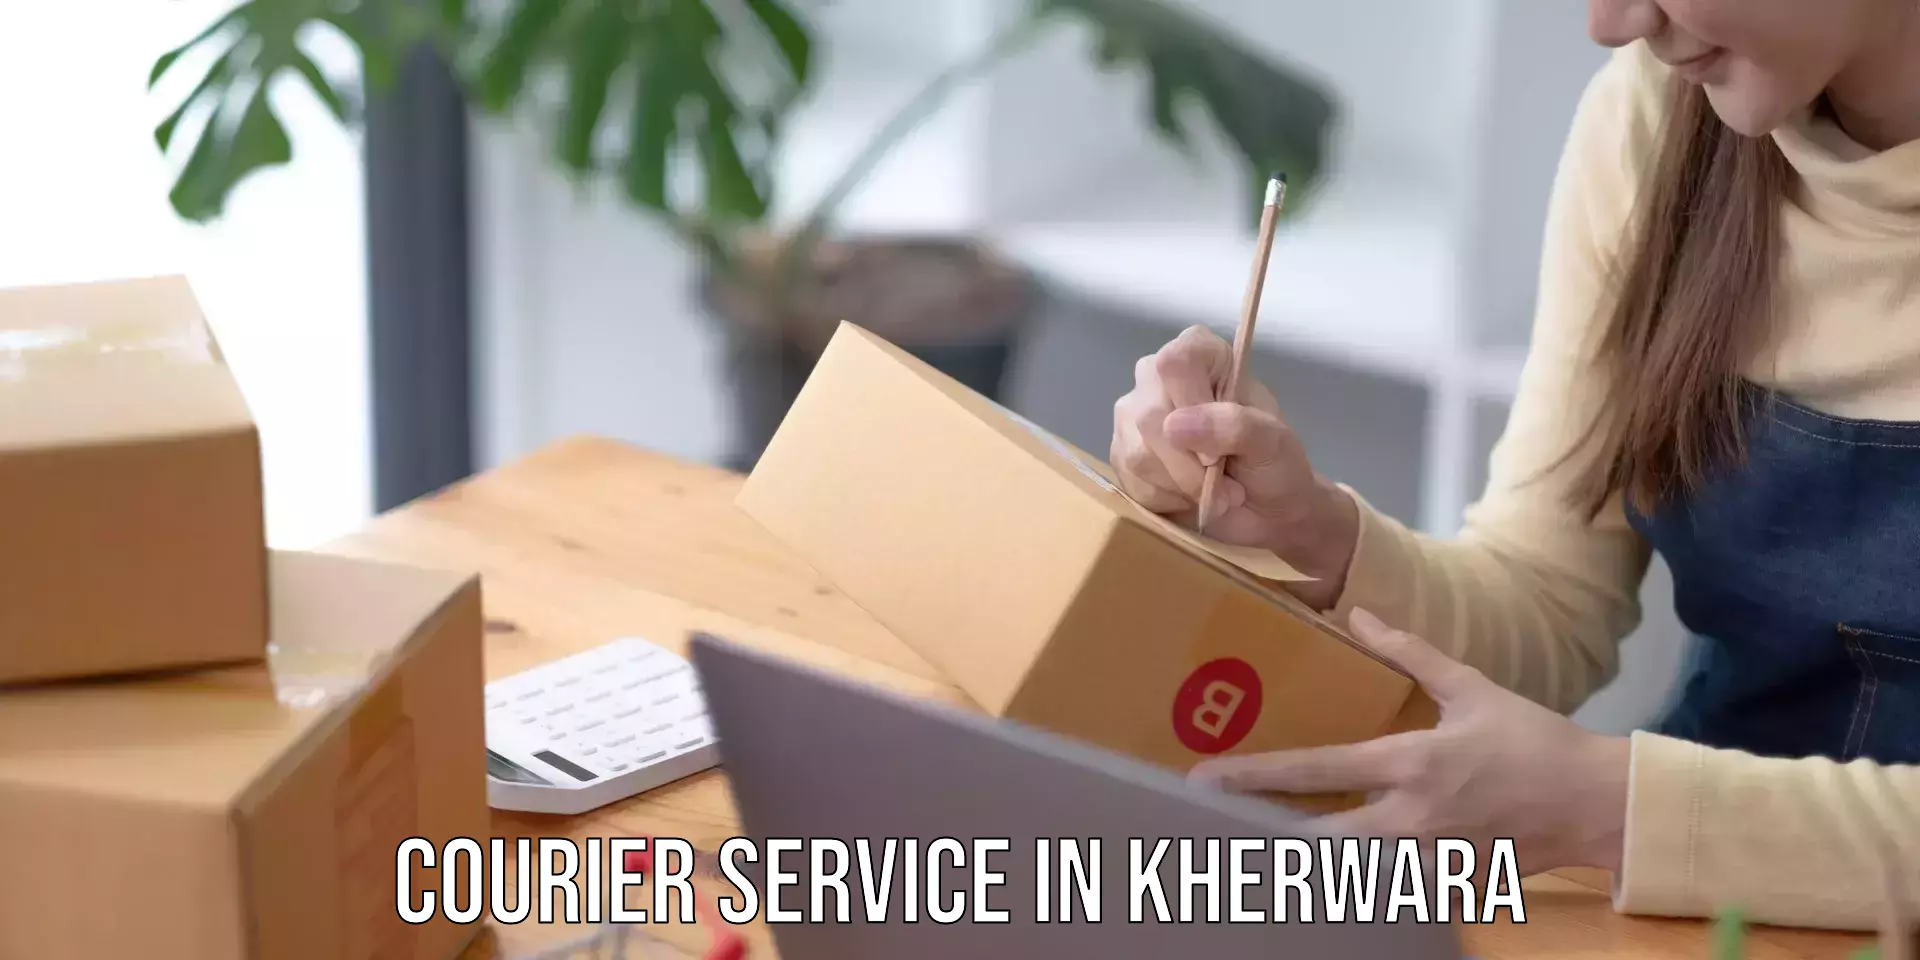 Effective logistics strategies in Kherwara